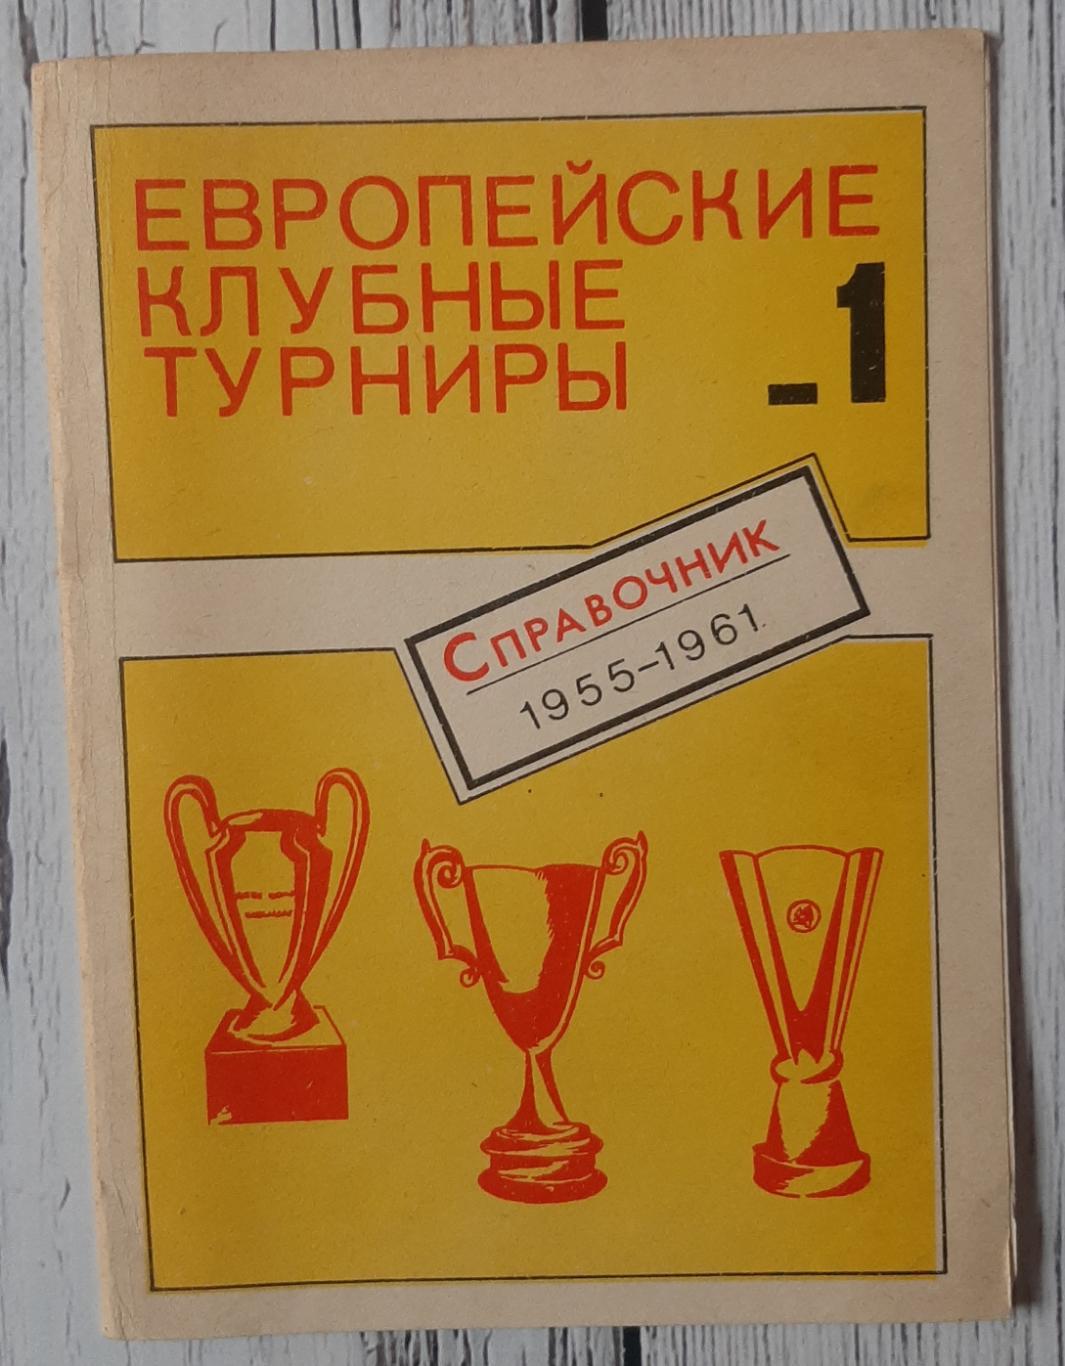 Європейські клубні турніри. Довідник. Частина 1. (сезони 1955/56-1960/61)